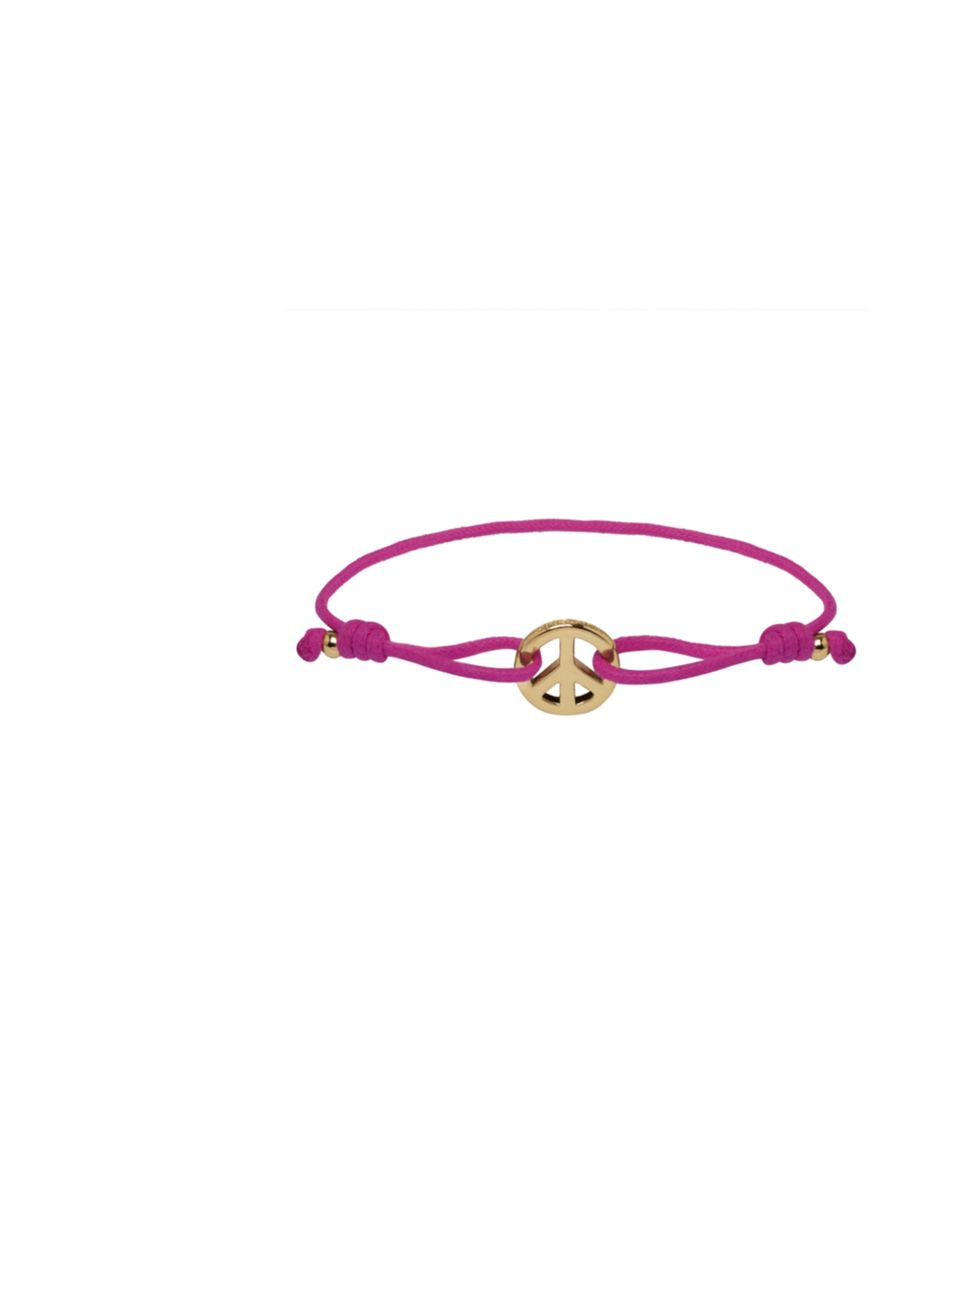 <p>Mulberry friendship bracelet, £60, at Selfridges</p><p><a href="http://shopping.elleuk.com/browse?fts=mulberry+peace+friendship+bracelet">BUY NOW</a></p>